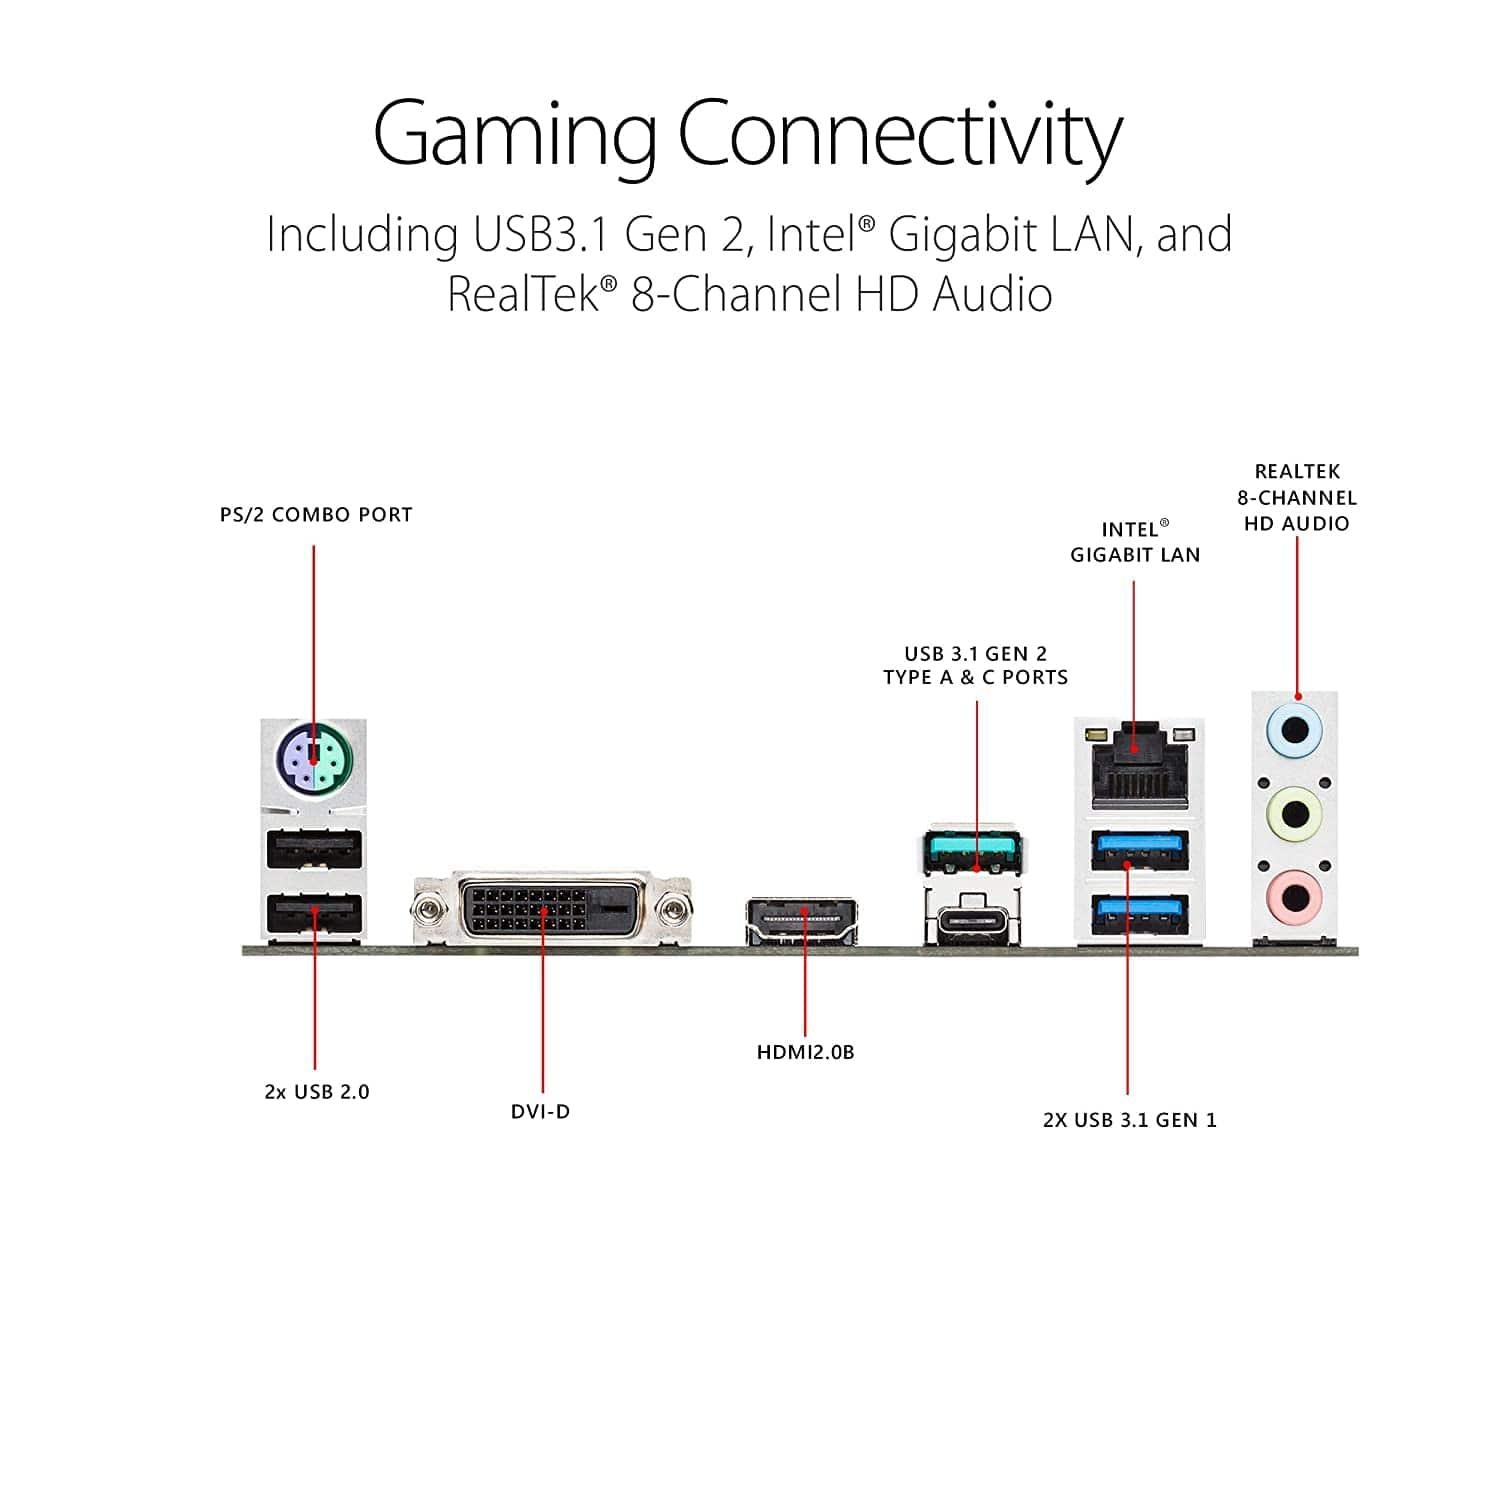 ASUS ROG Strix B450-F Gaming Motherboard-Mother Boards-dealsplant